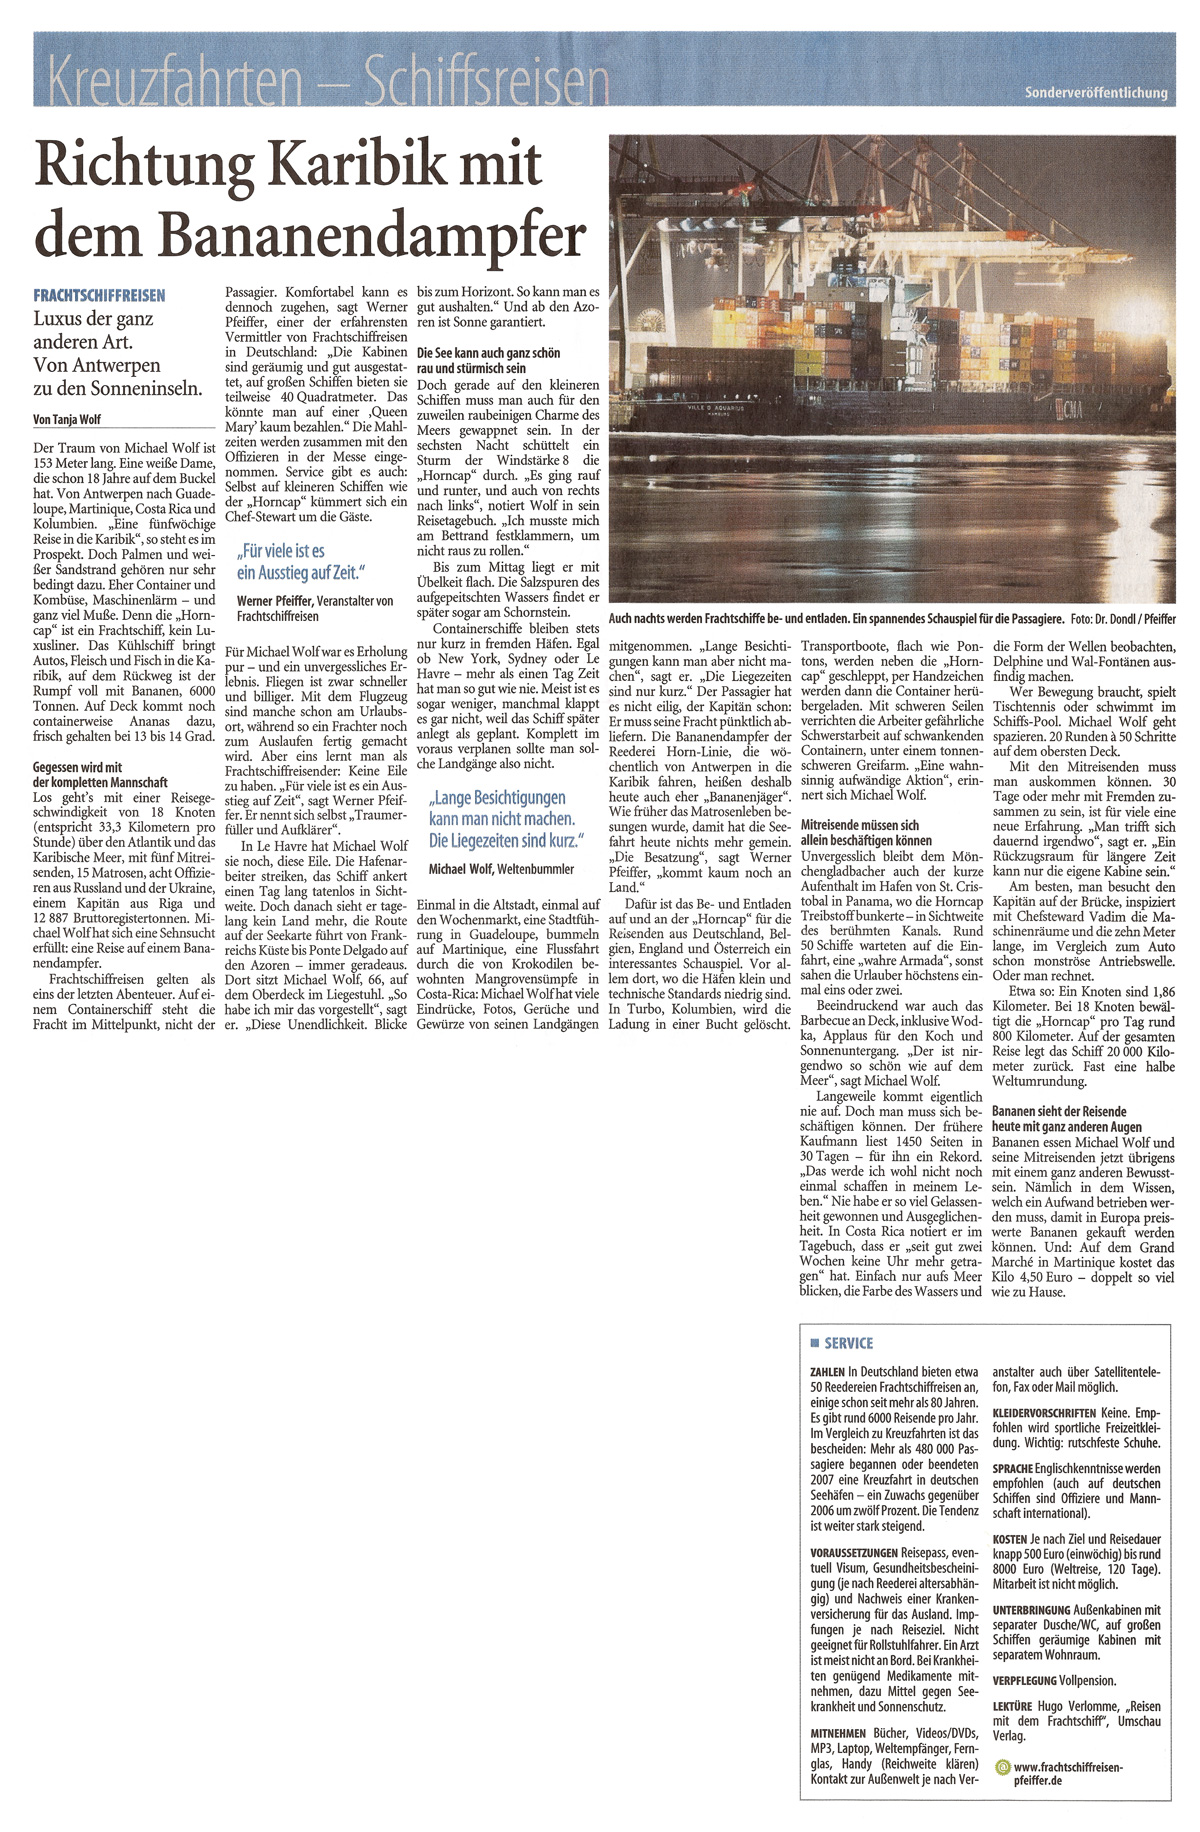 Internationale Frachtschiffreisen Pfeiffer - Presseberichte - Westdeutsche Zeitung 31.01.2009